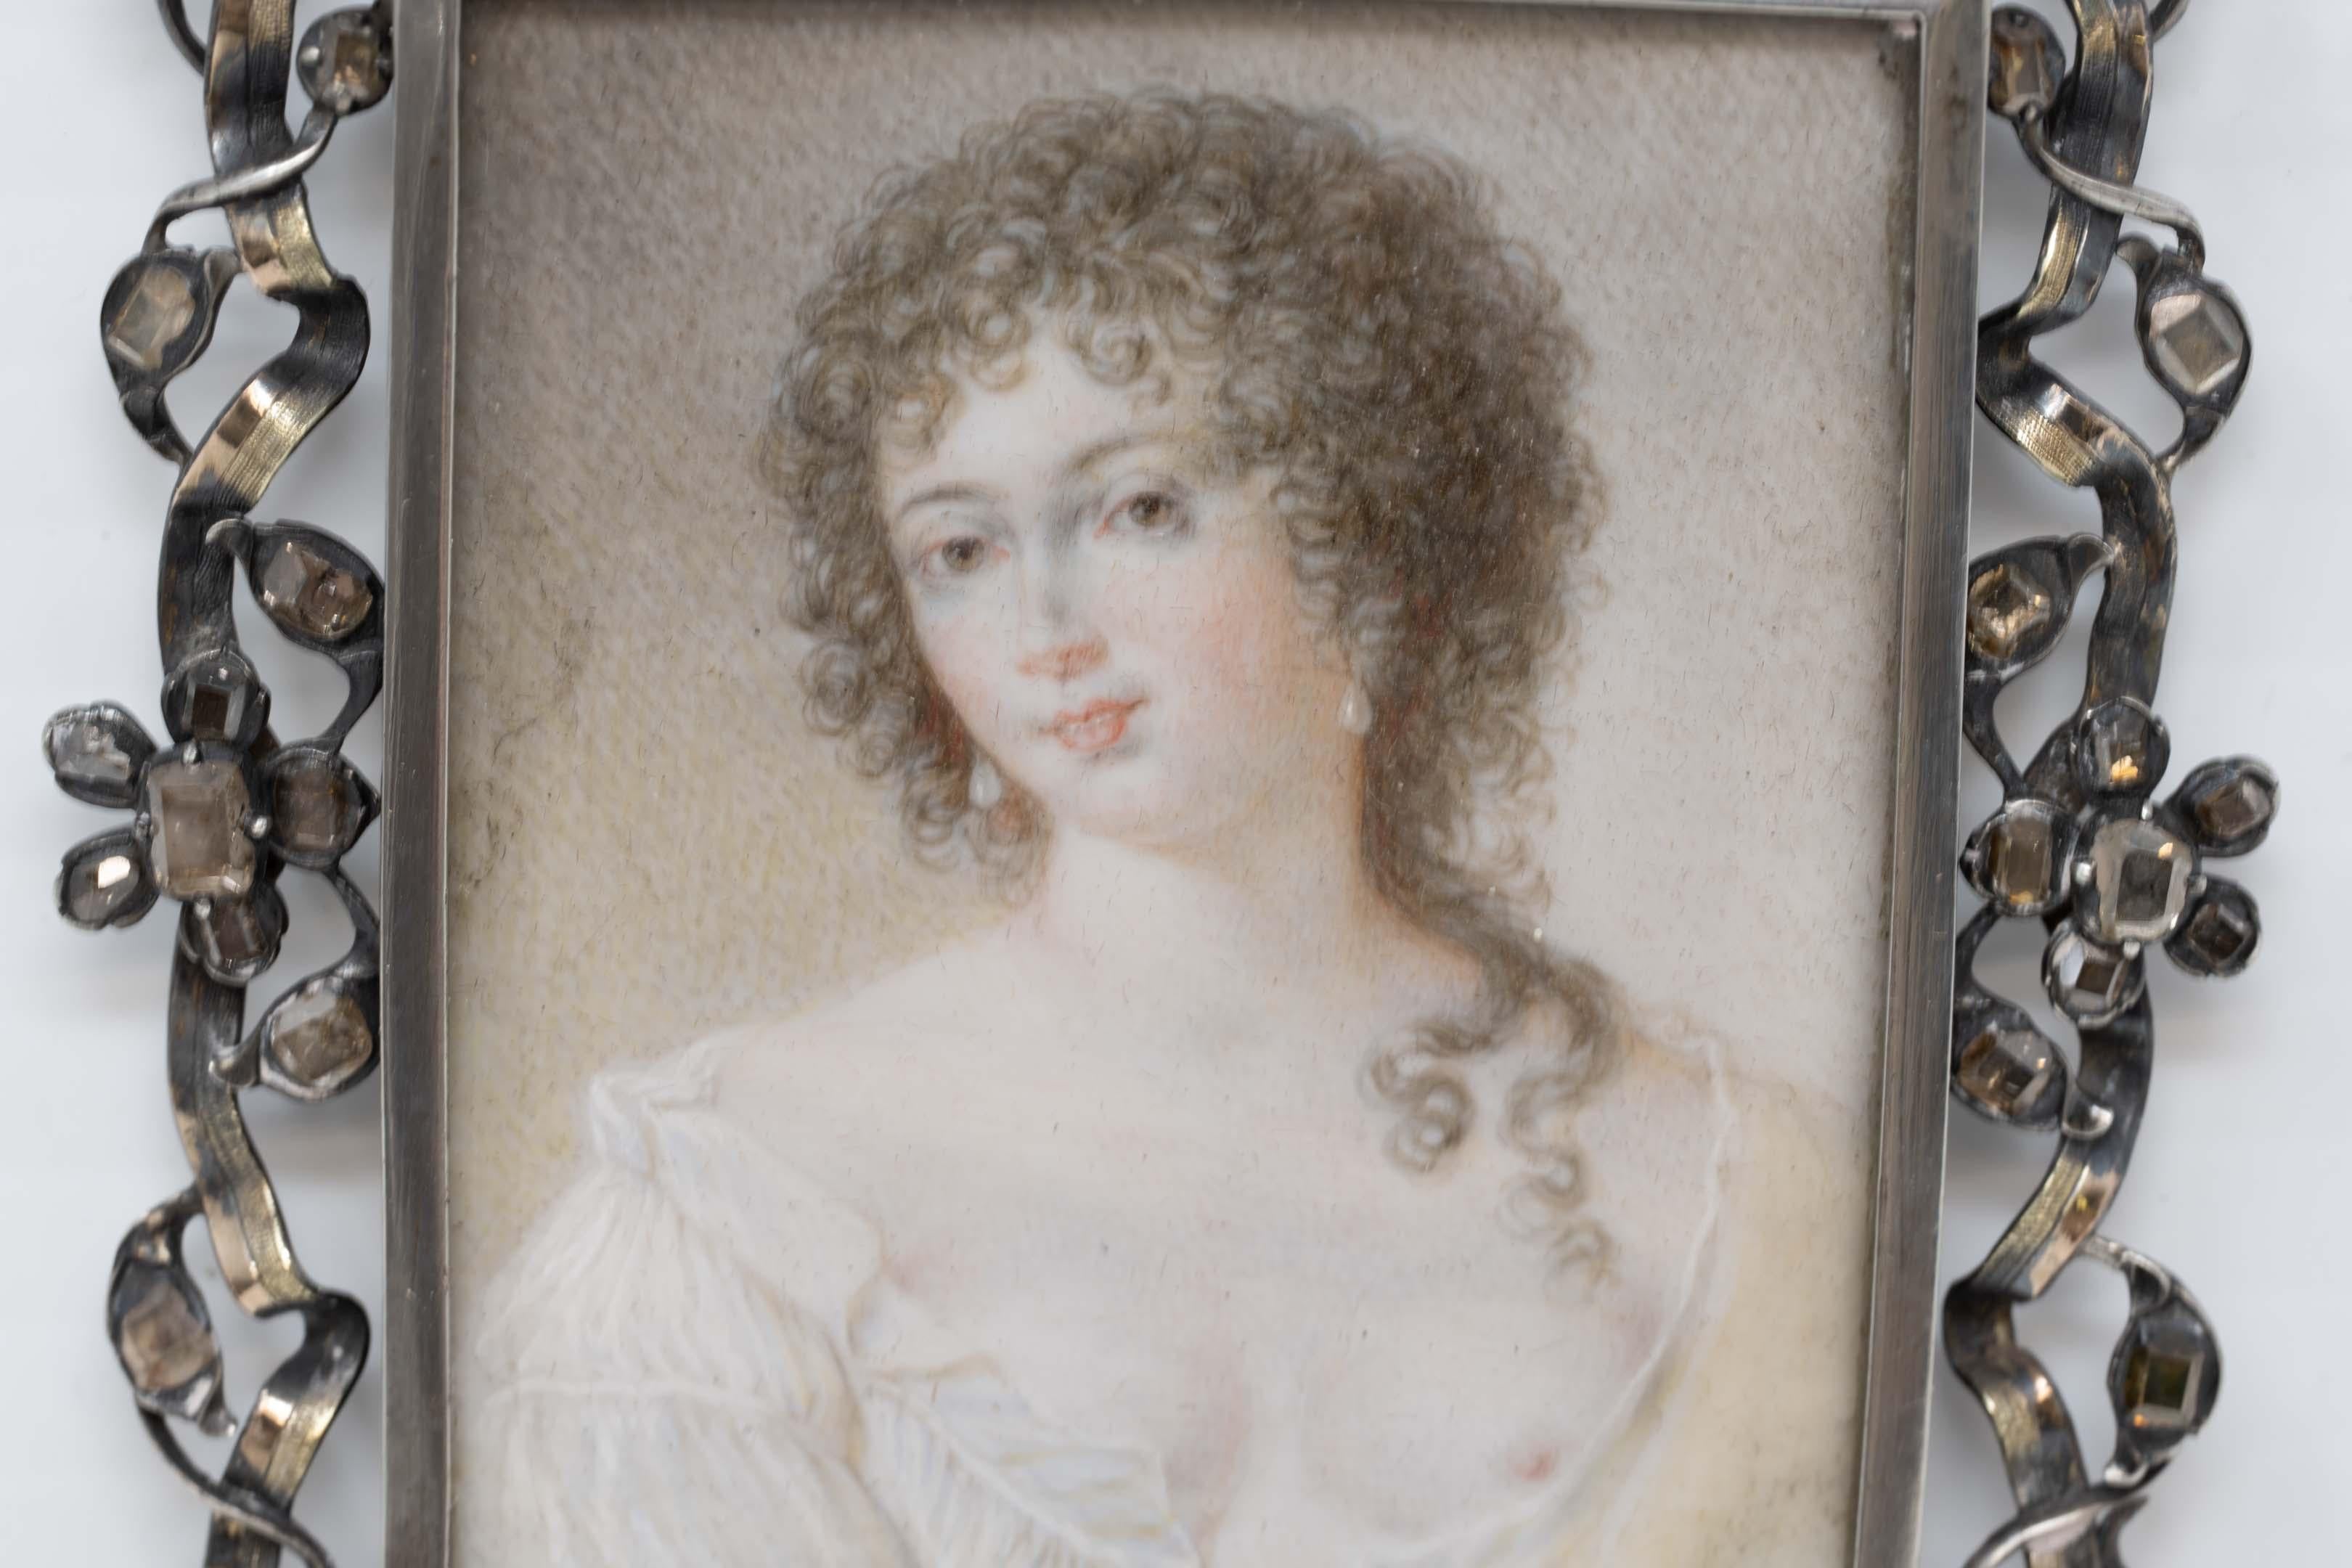 Portrait miniature d'une jeune femme, peint à la main au 18e siècle, dans un cadre en argent massif, entouré de cristaux carrés, rectangulaires et taillés à l'ancienne (l'un d'entre eux est manquant ou cassé). La miniature n'est pas signée. Les